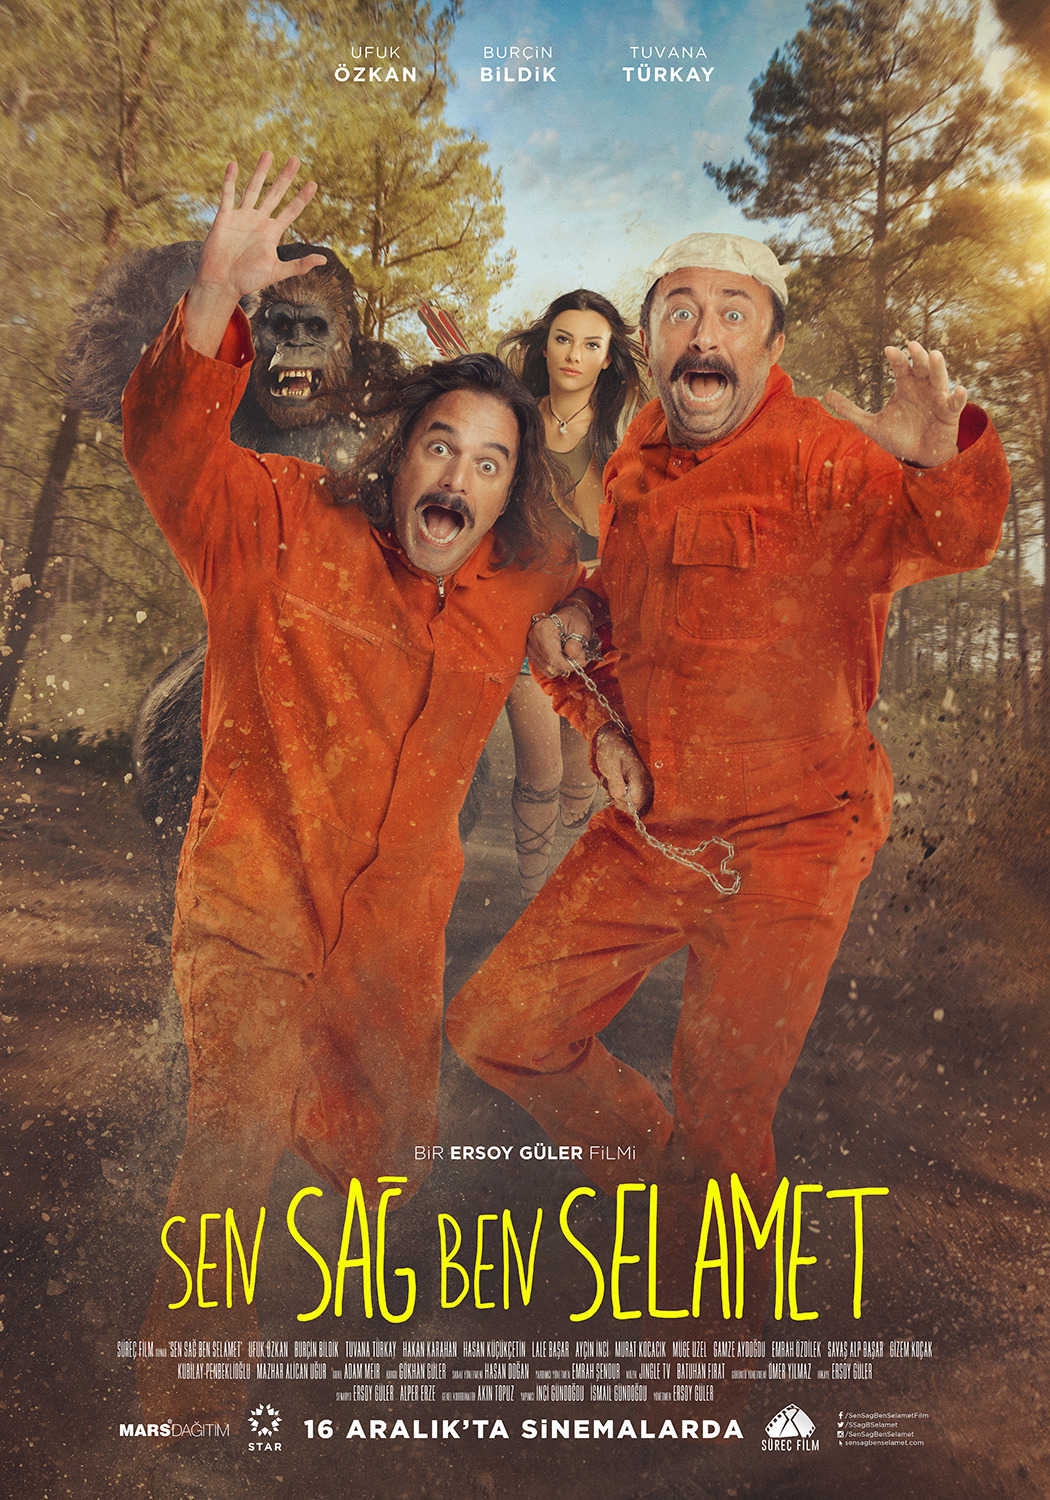 Extra Large Movie Poster Image for Sen Sag Ben Selamet (#4 of 4)